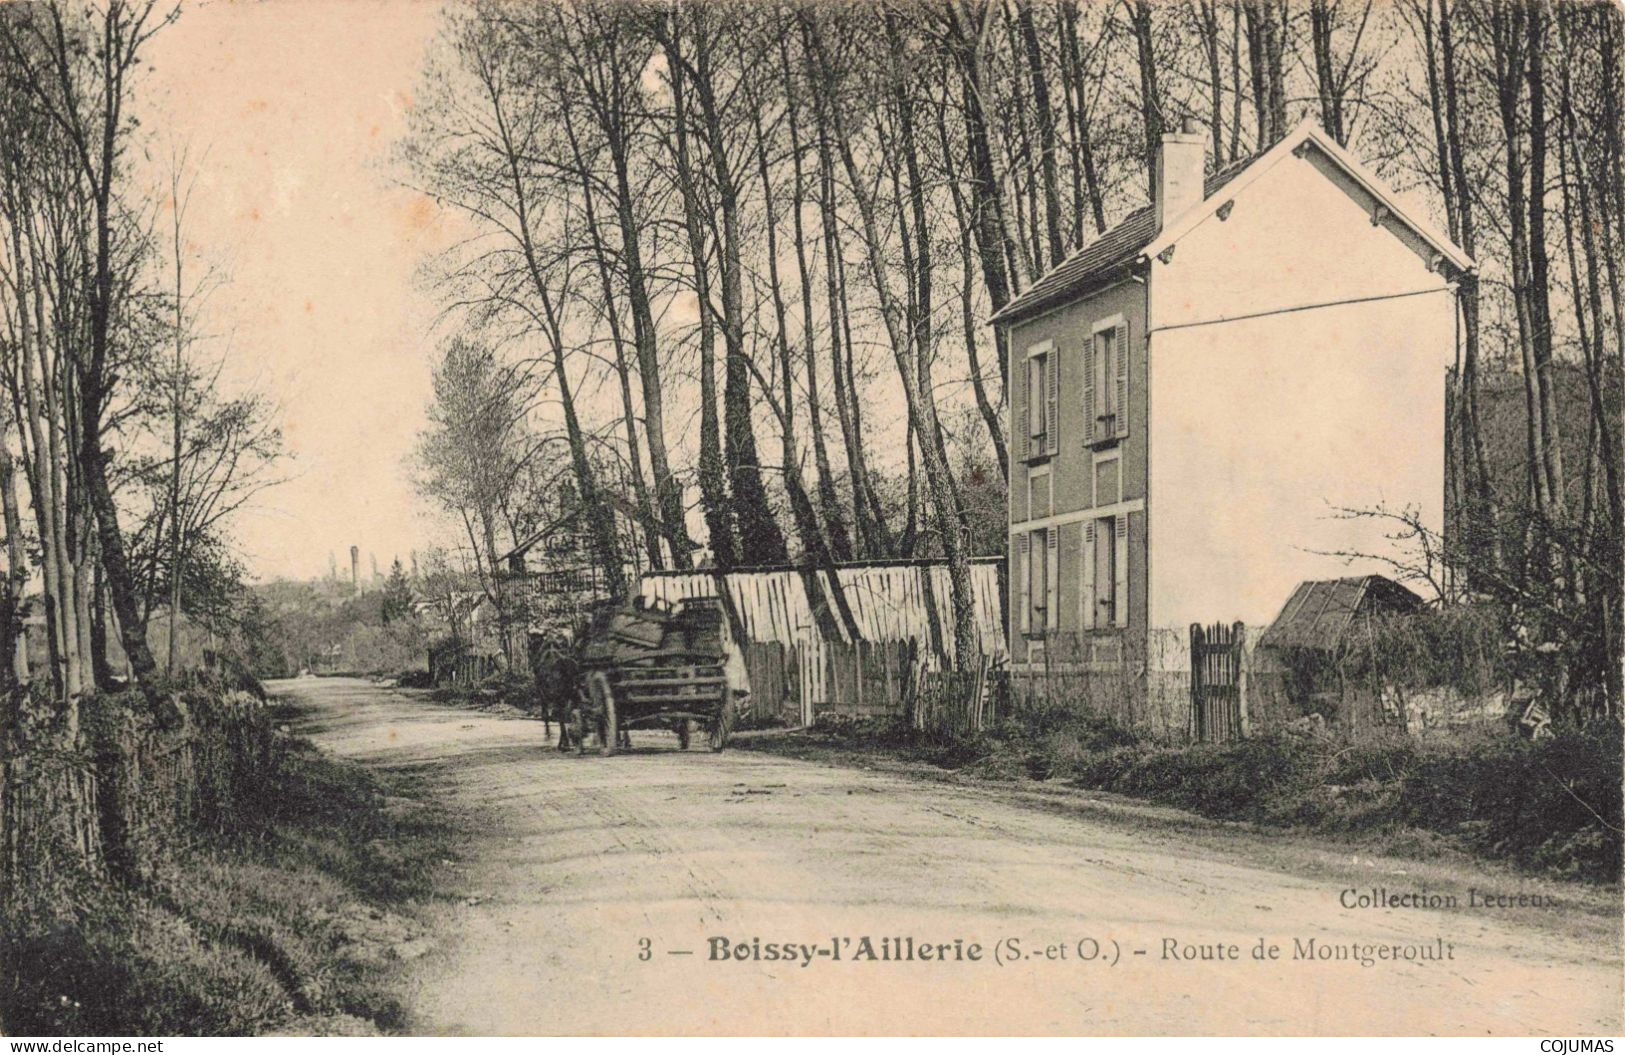 95 - BOISSY L AILLERIE - S17723 - Route De Montgeroult - Pli - Boissy-l'Aillerie